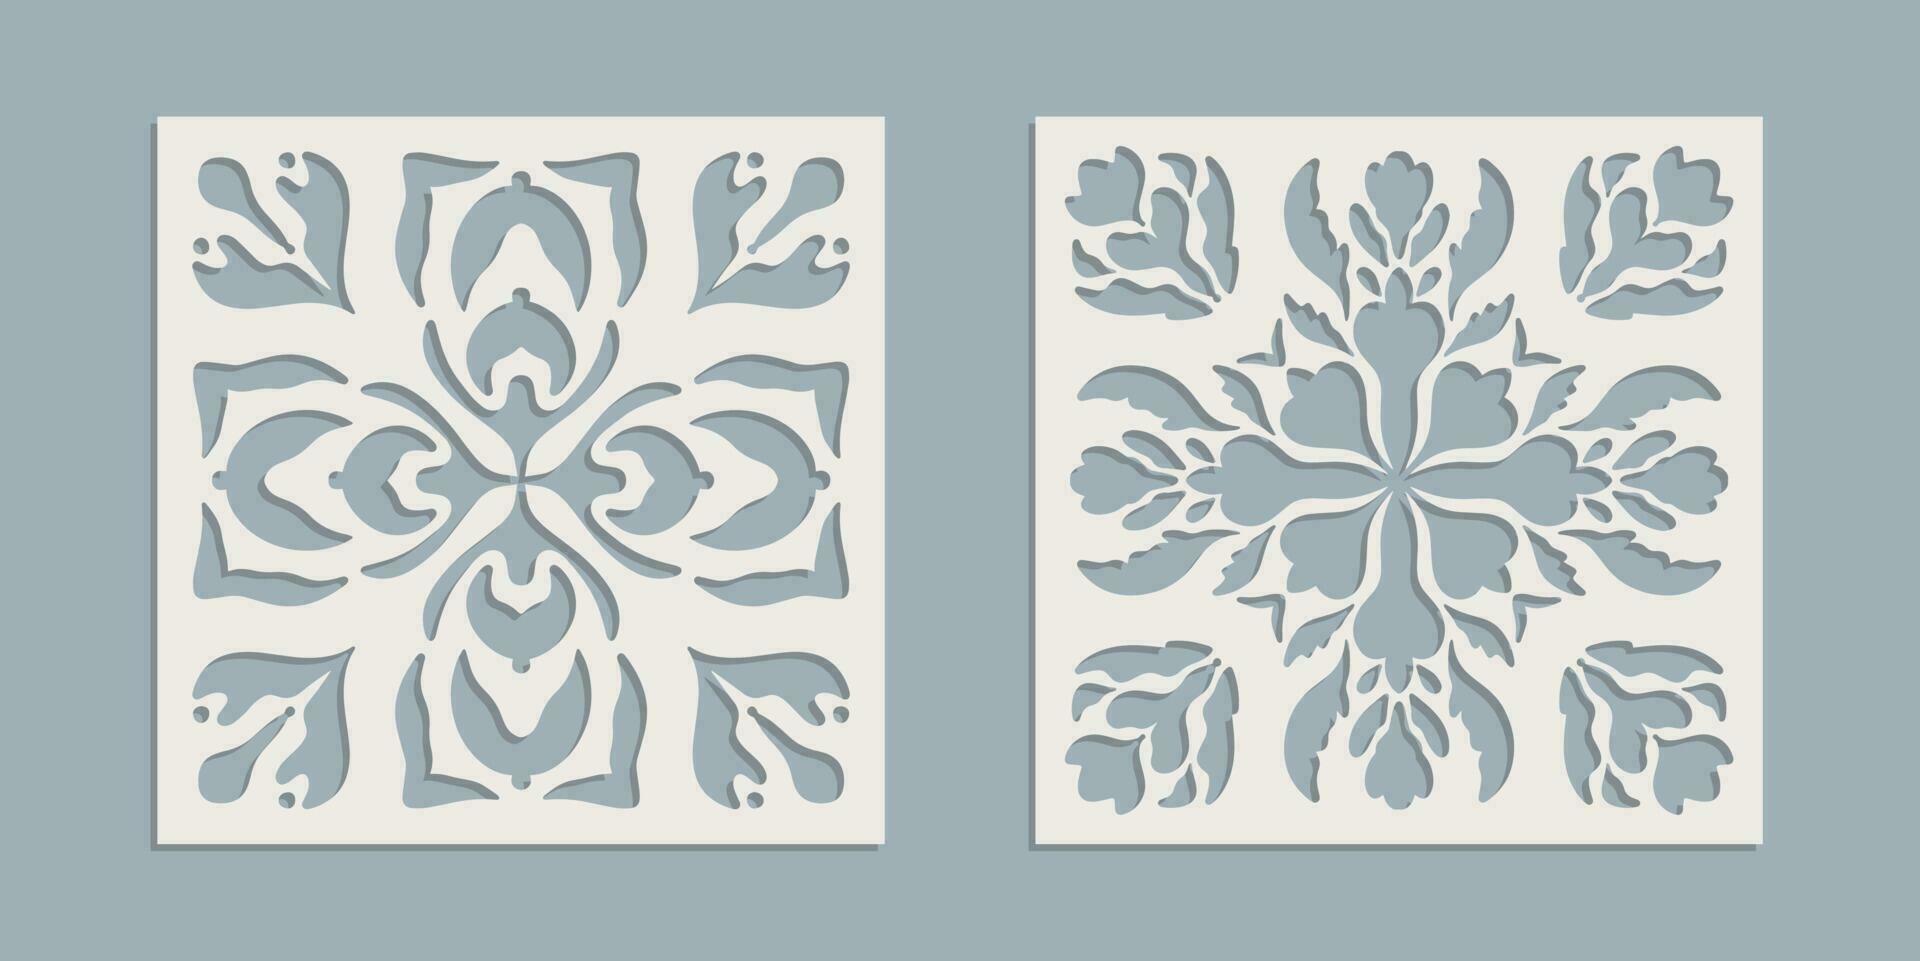 Jahrgang Laser- Schnitt Muster mit Blumen- Barock Ornament. Vektor Schablone Vorlage zum cnc Schneiden, dekorativ Paneele von Holz, Metall, Papier, Plastik